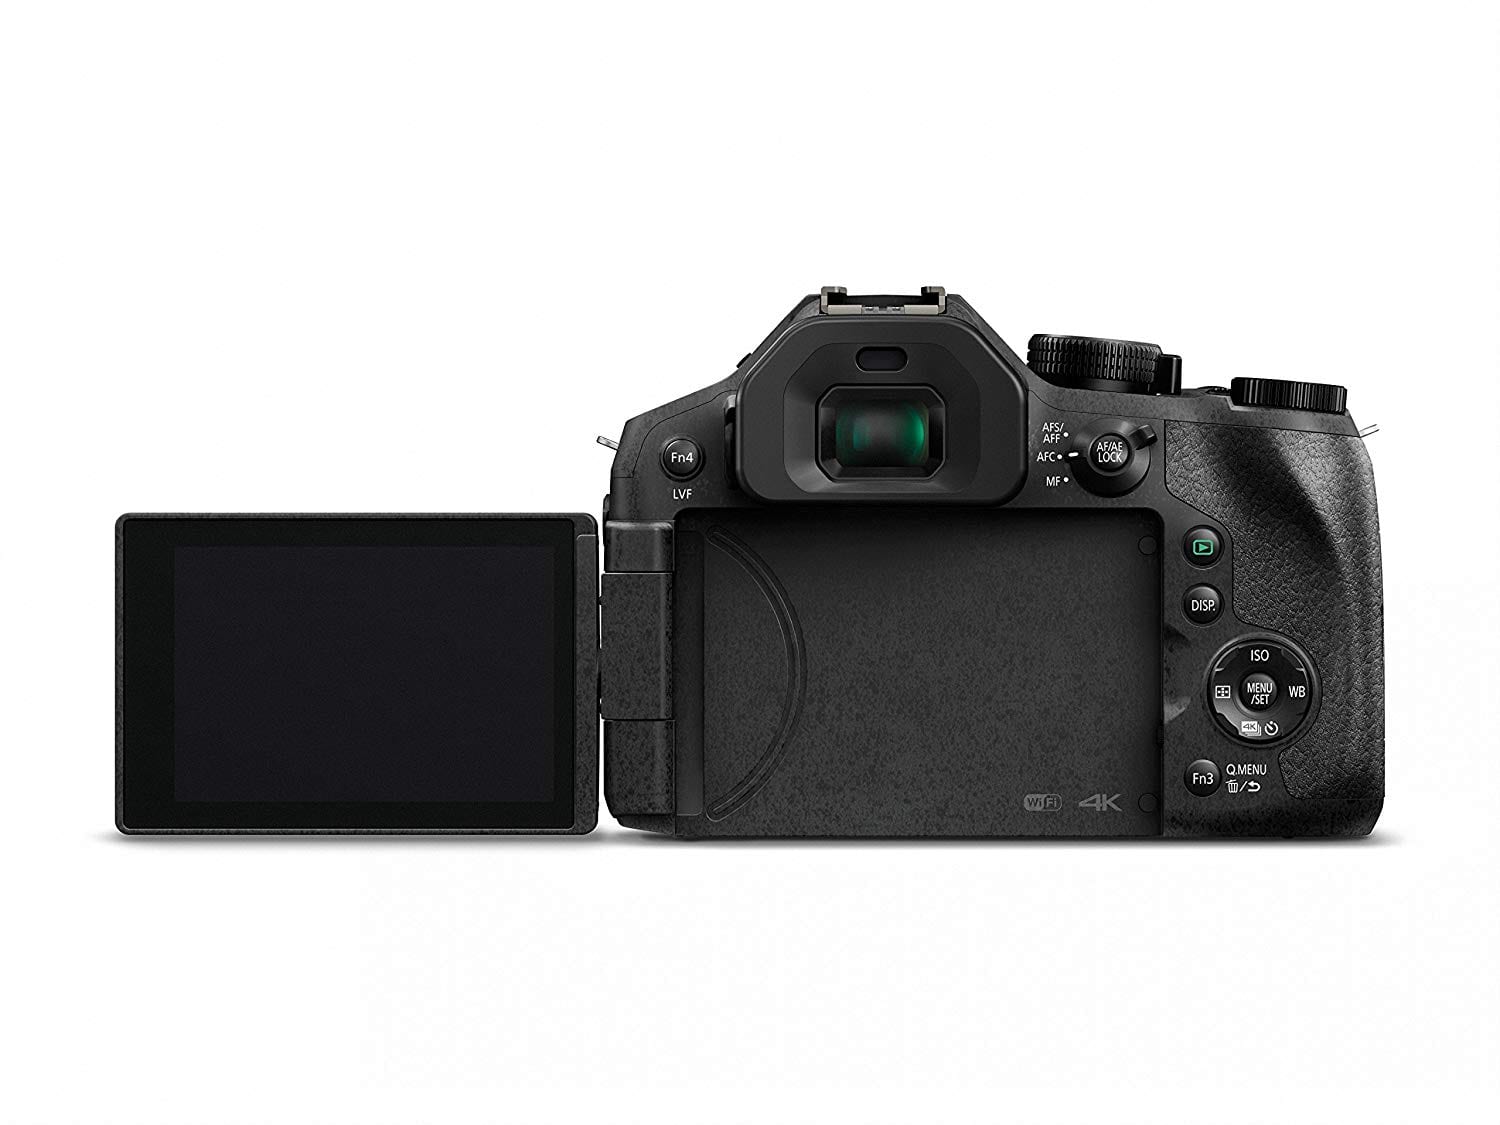 Meilleur appareil photo bridge N°5 : Le Panasonic Lumix FZ300 / FZ330, offre un excellent viseur